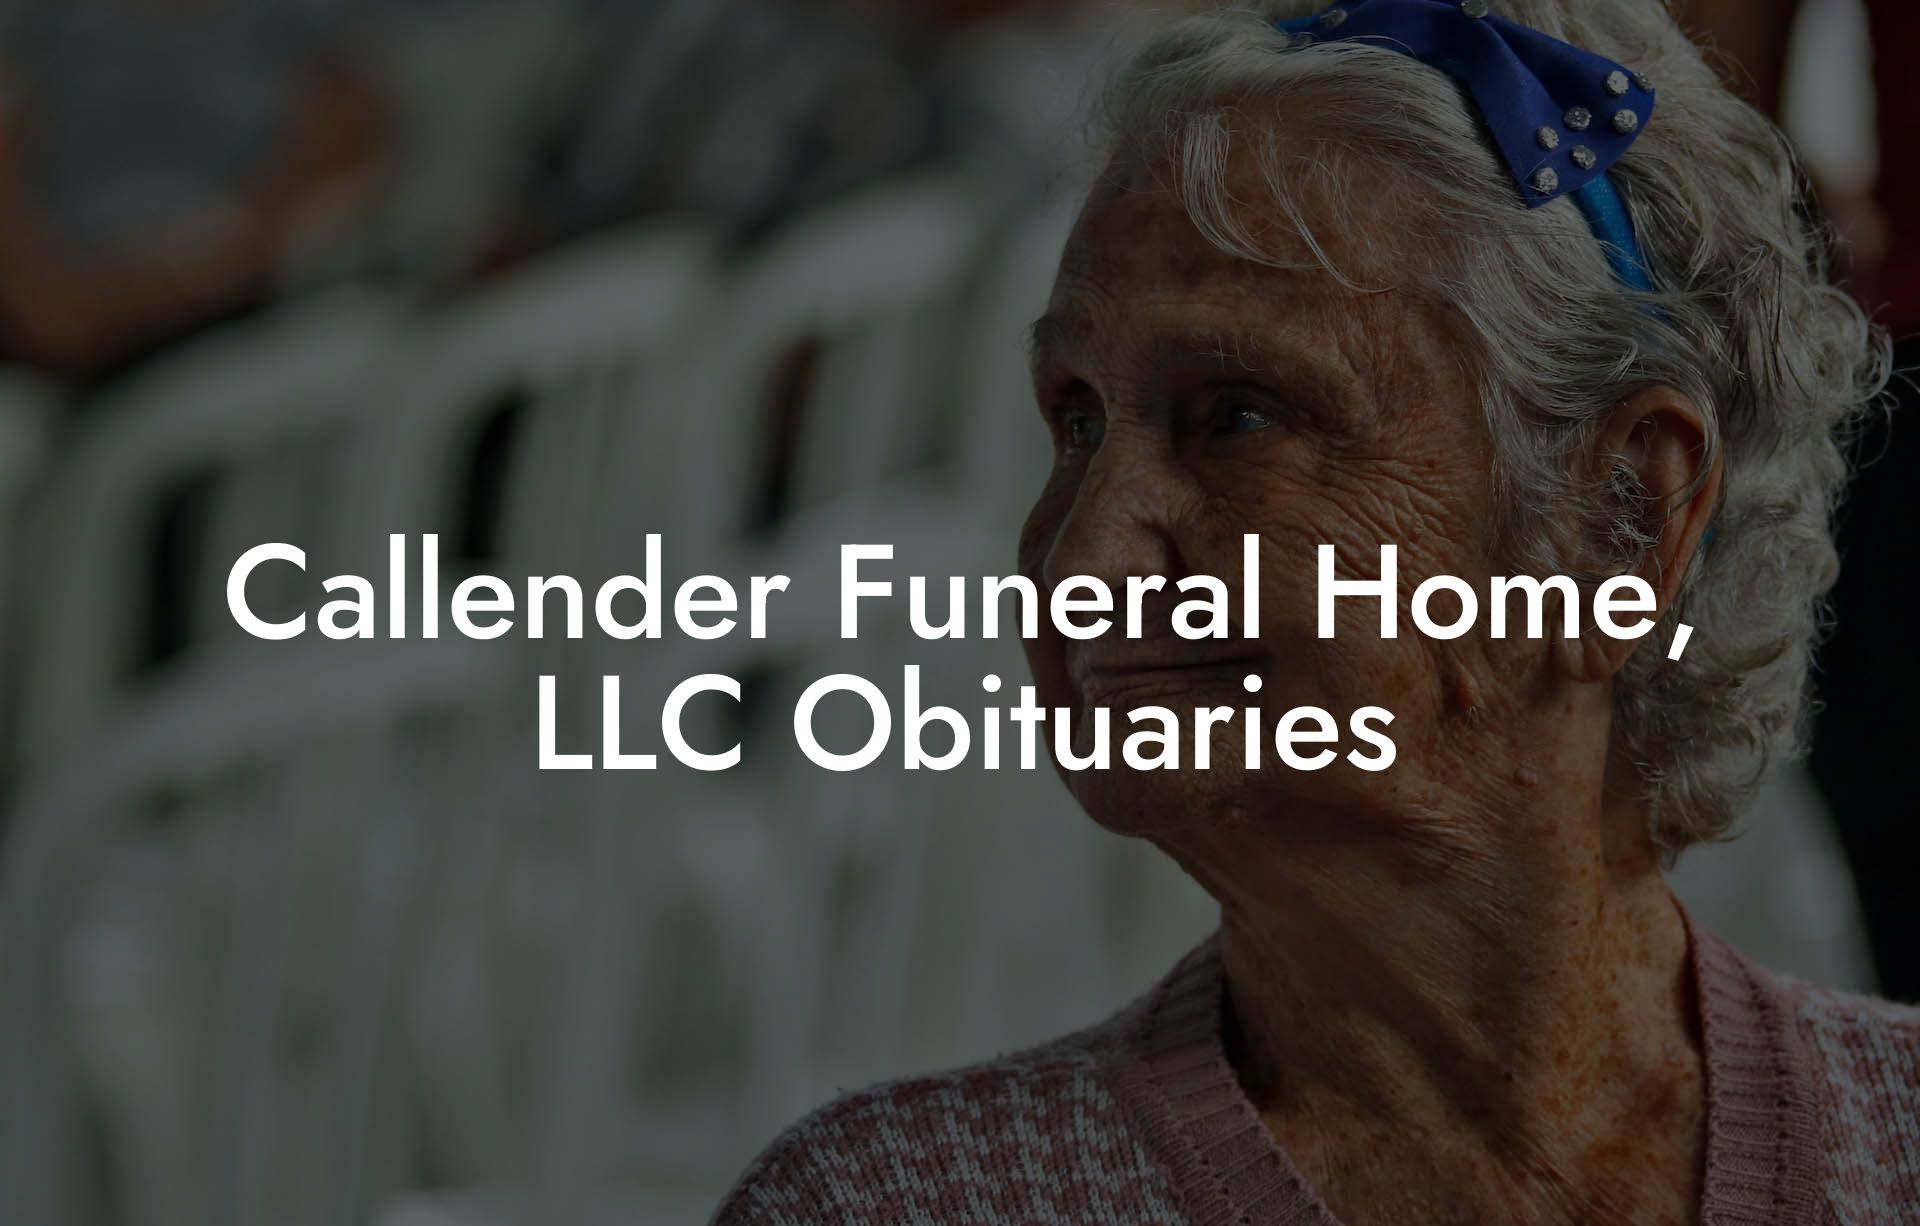 Callender Funeral Home, LLC Obituaries